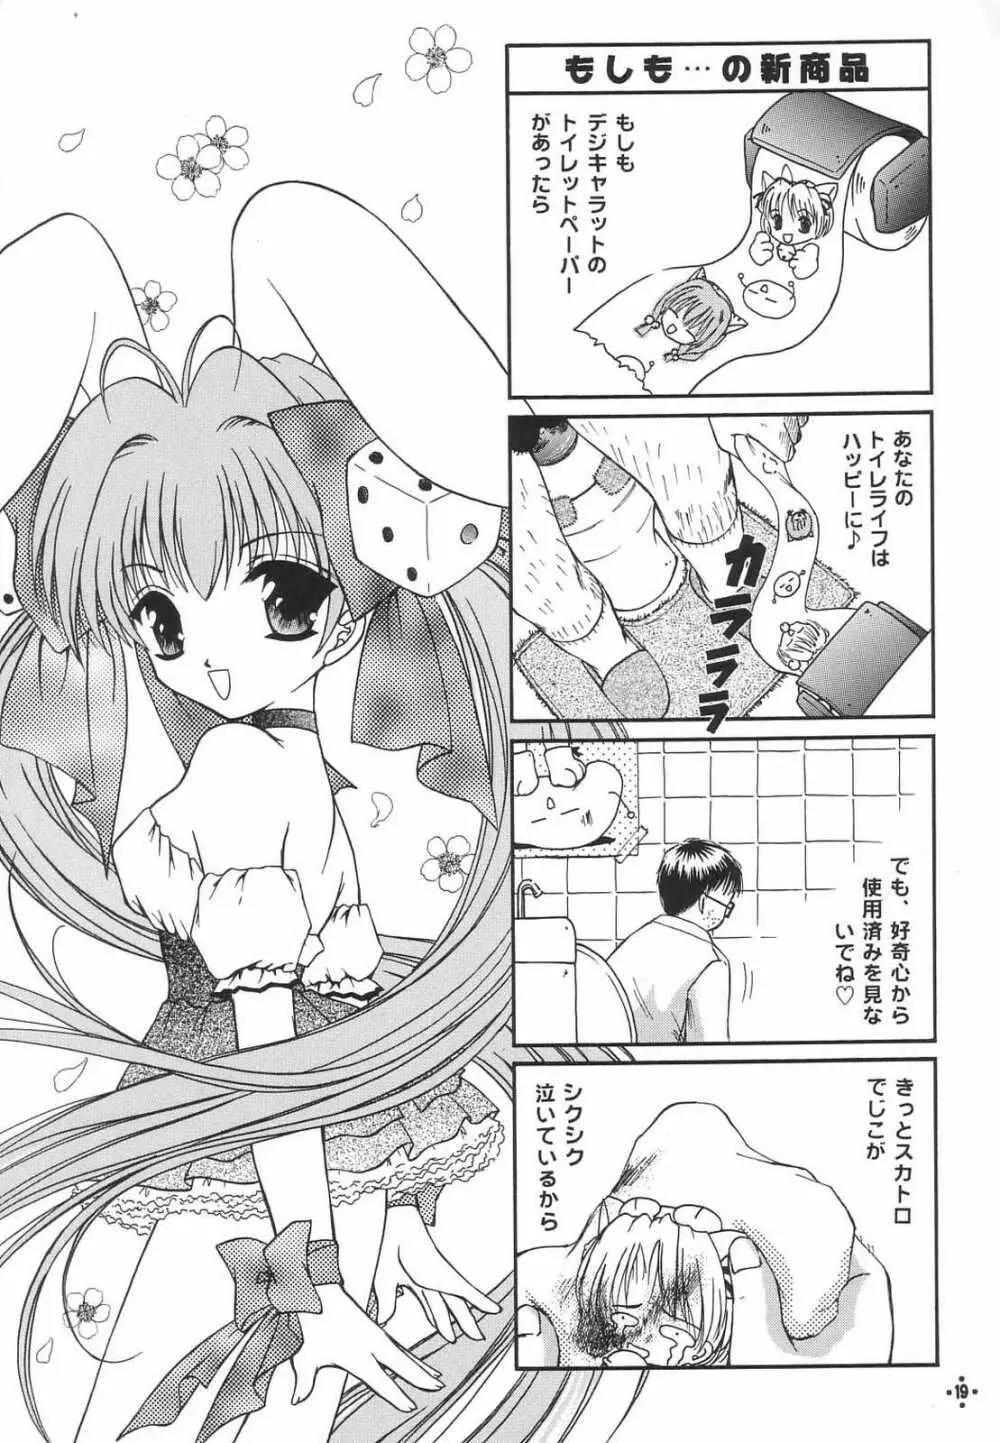 Shimensoka 8 18ページ